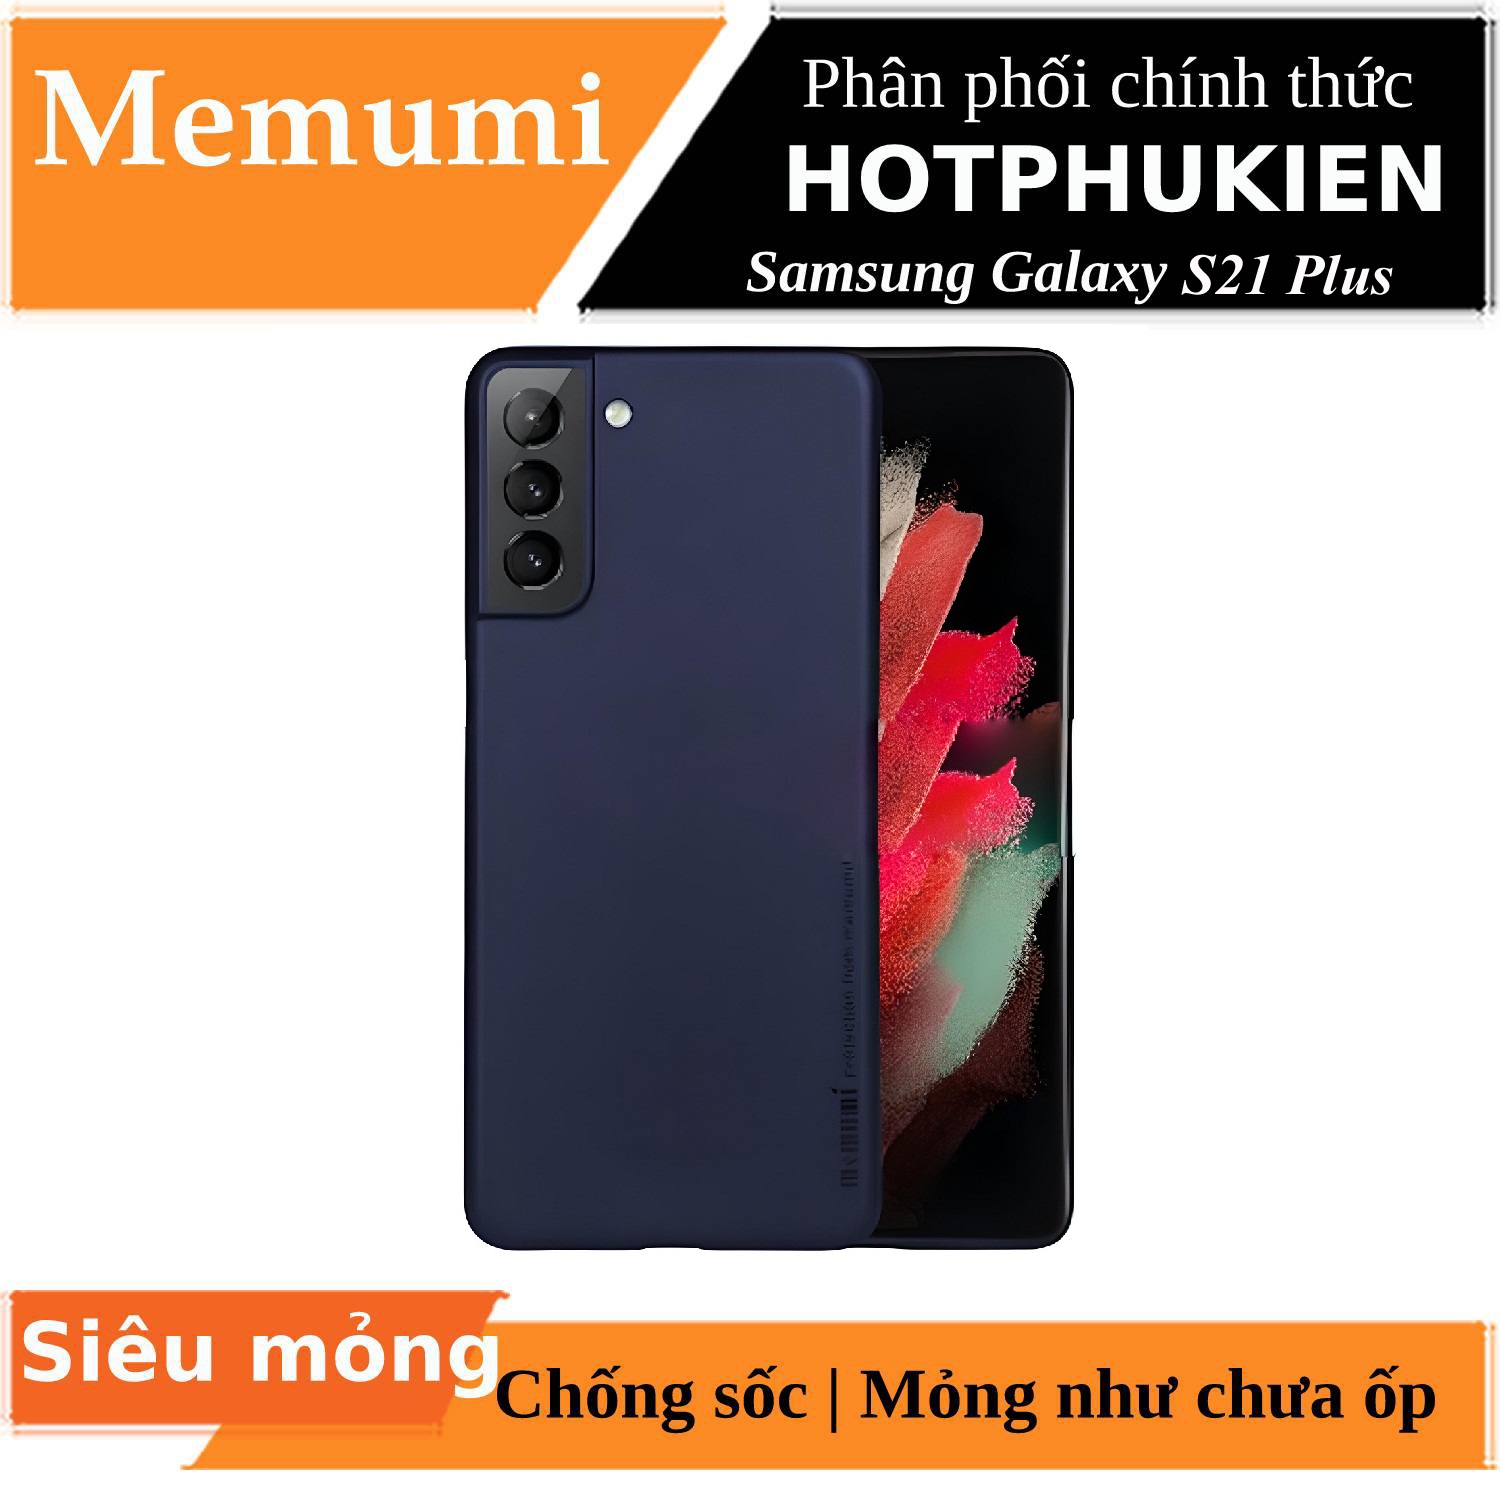 Ốp lưng nhám chống sốc siêu mỏng 0.3mm cho Samsung Galaxy S21 Plus hiệu Memumi - hàng nhập khẩu